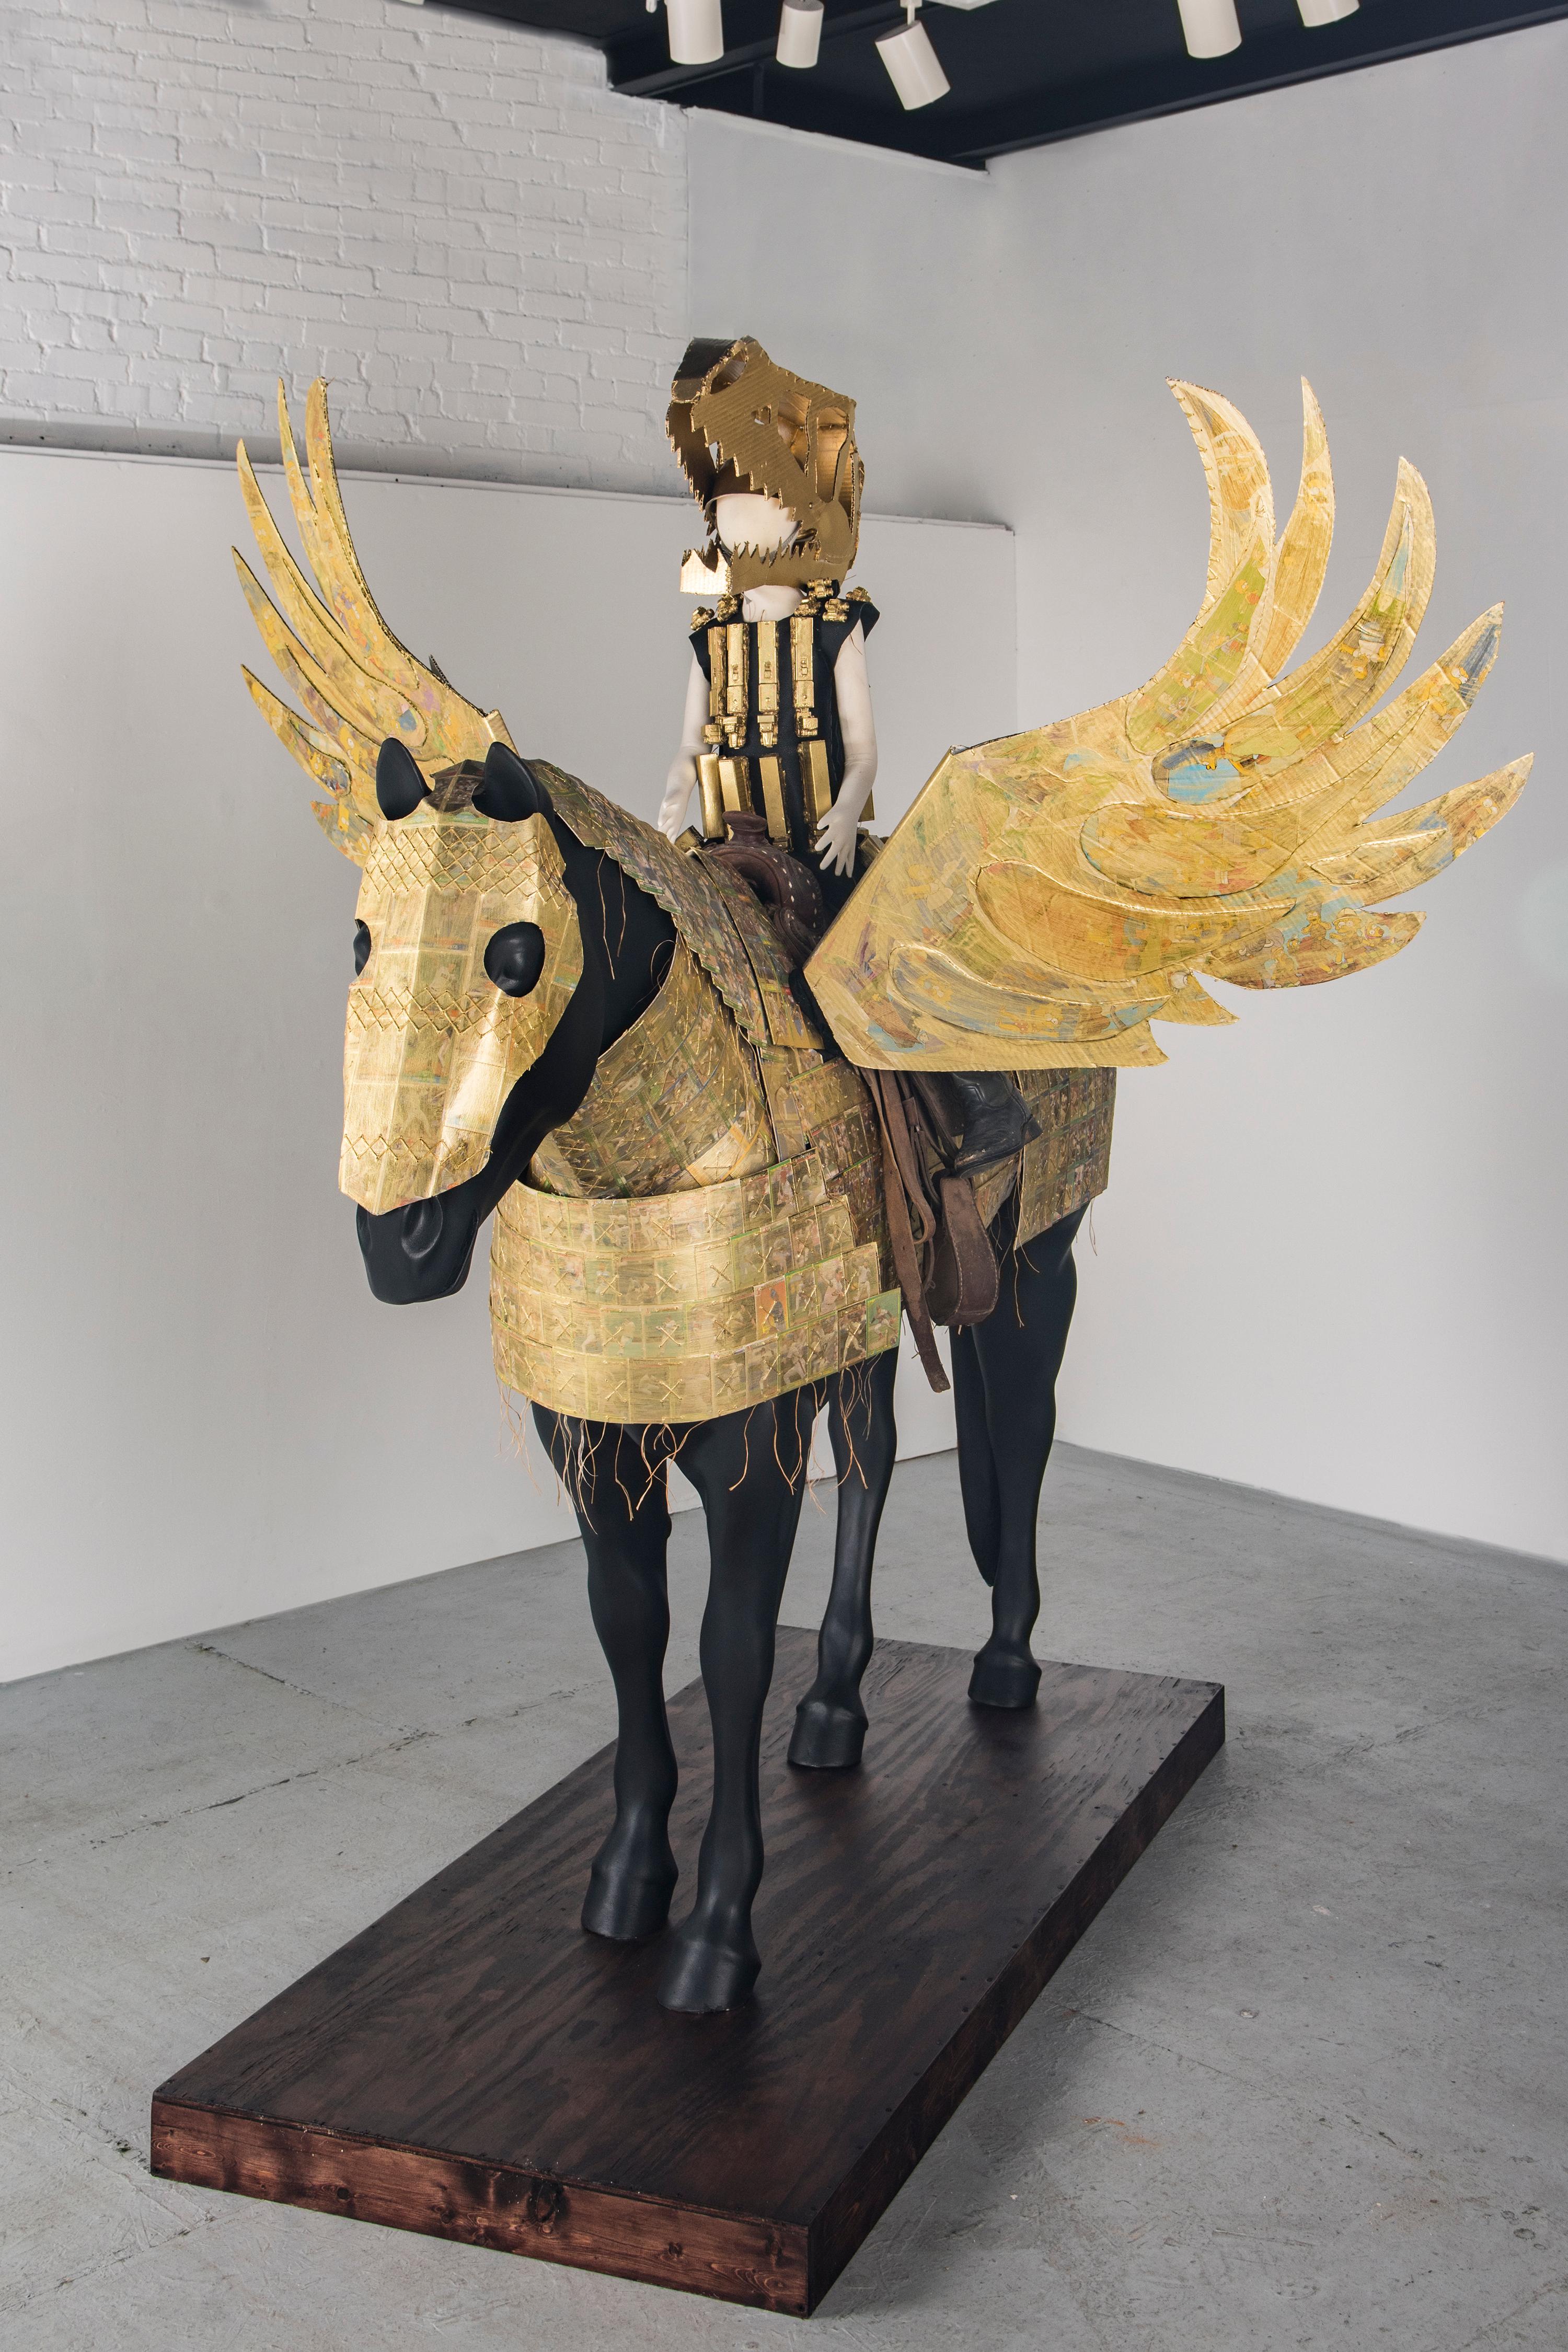 Sculpture grandeur nature d'une figure humaine sur un cheval : "Golden Pegasus Armor" (Armure d'or de Pegasus)